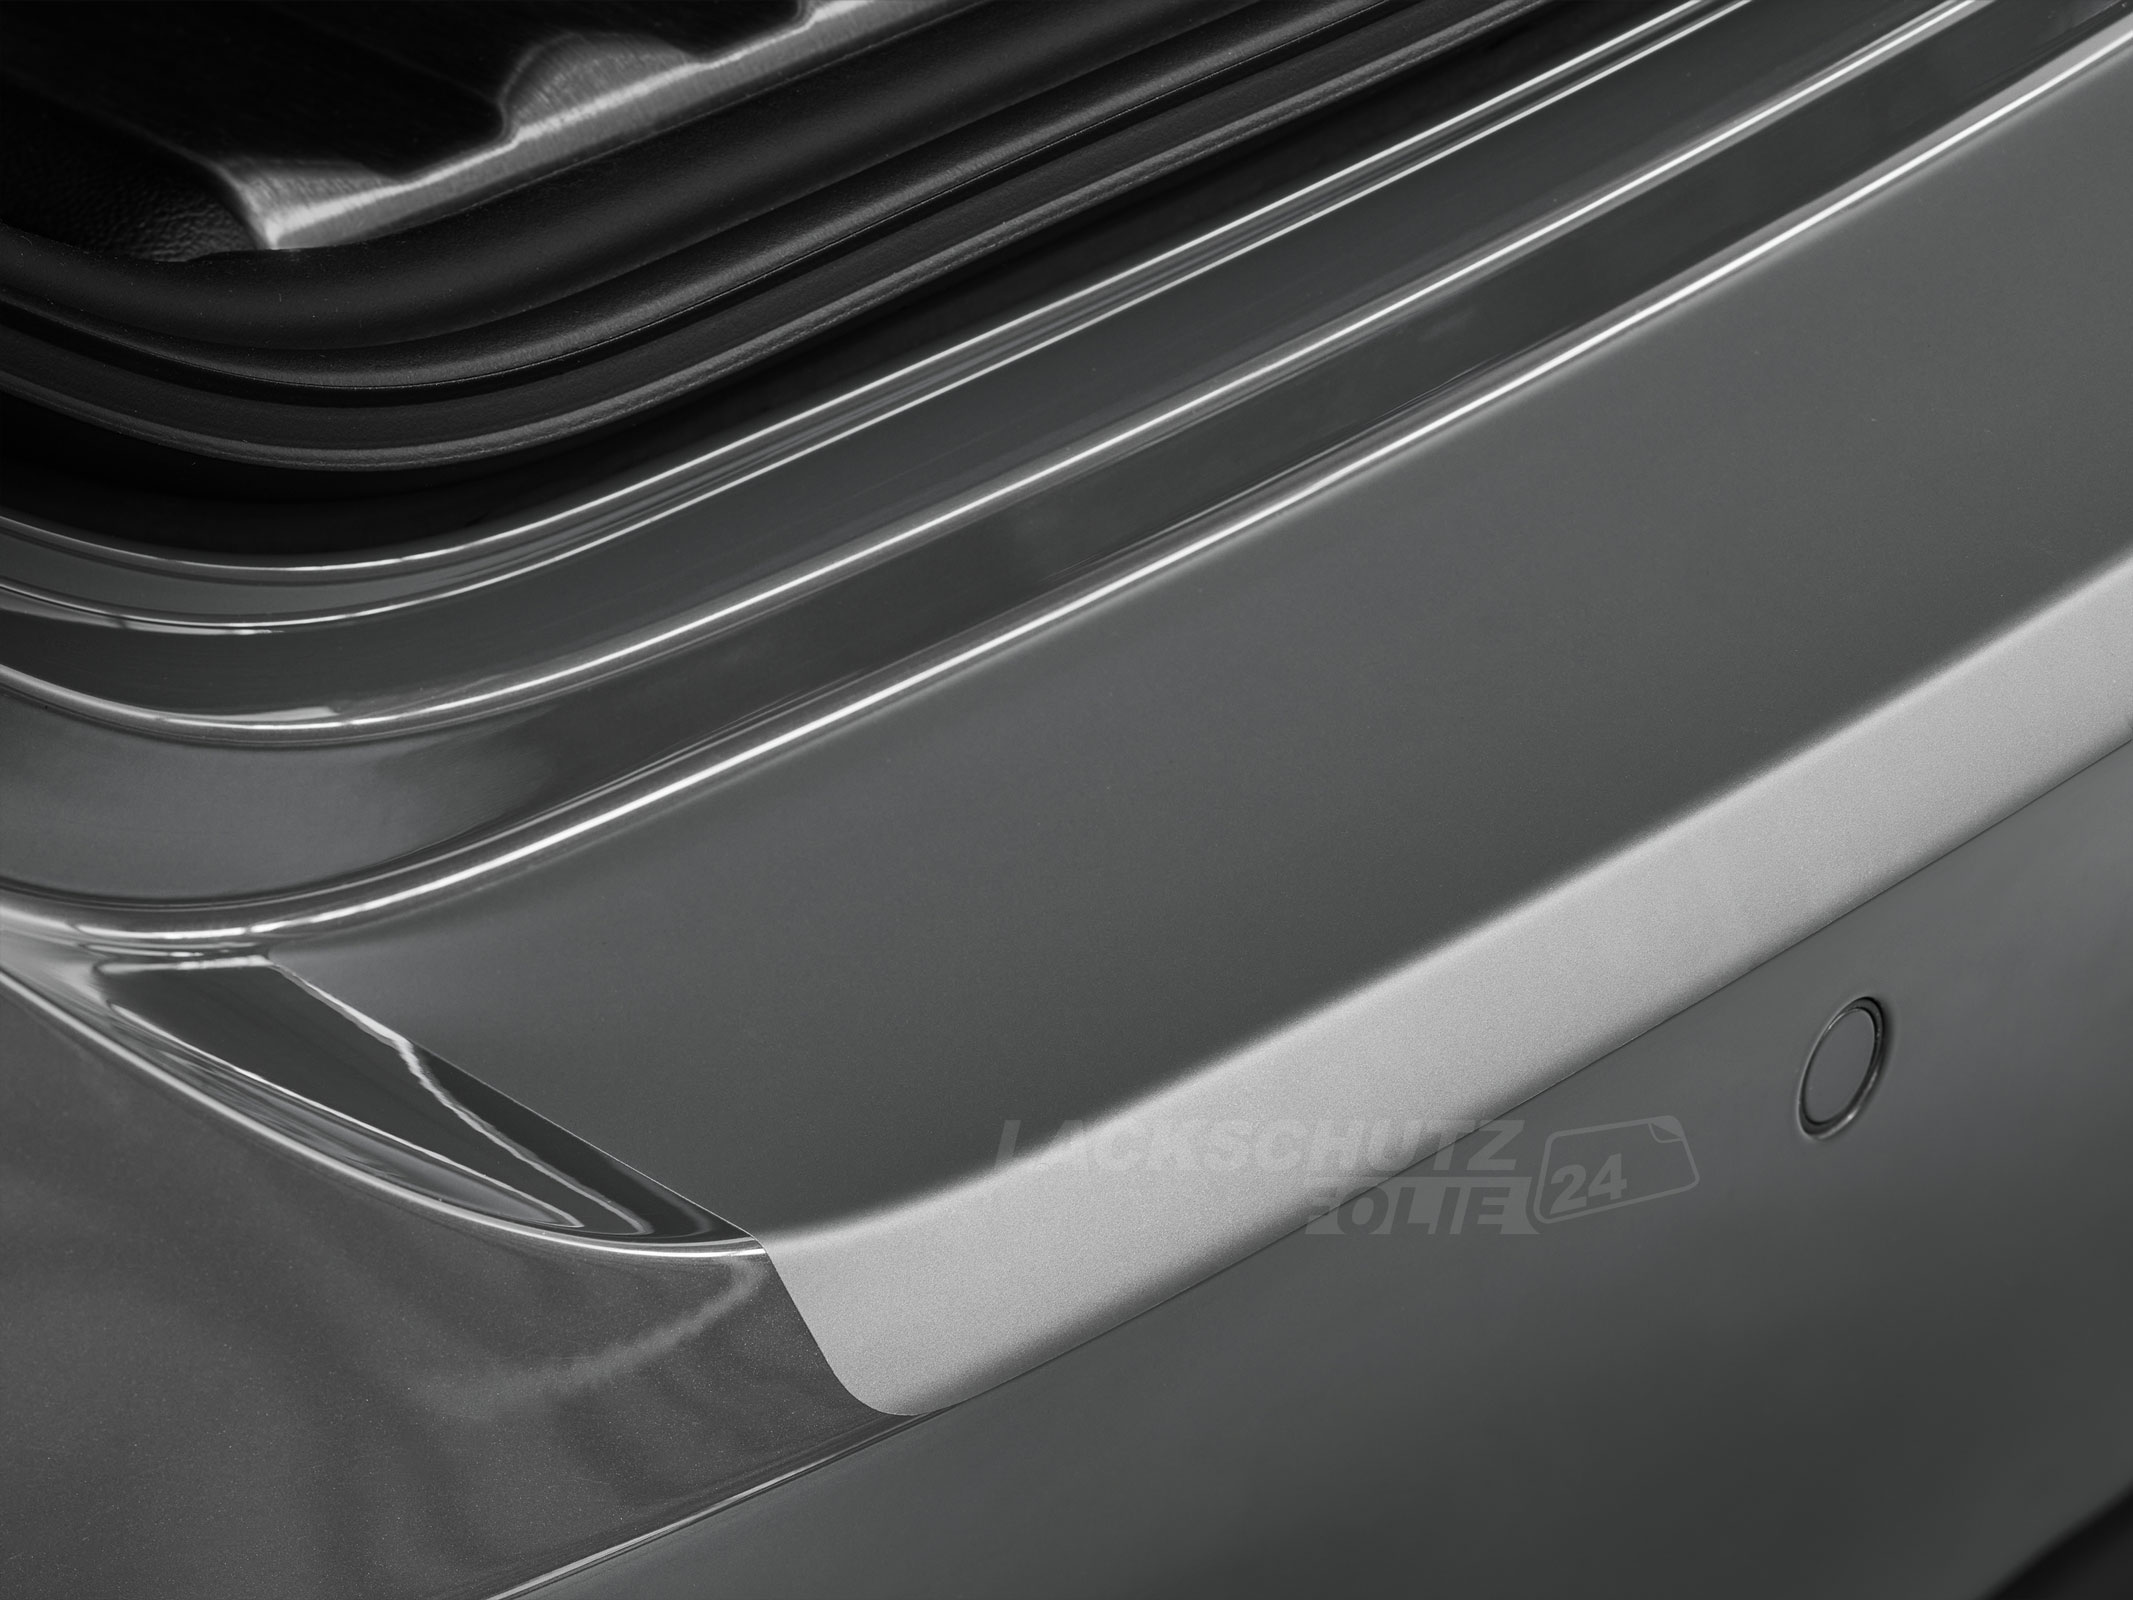 Ladekantenschutzfolie - Transparent Glatt MATT 110 µm stark  für BMW 5er Limousine Typ F10, BJ 2010-02/2017